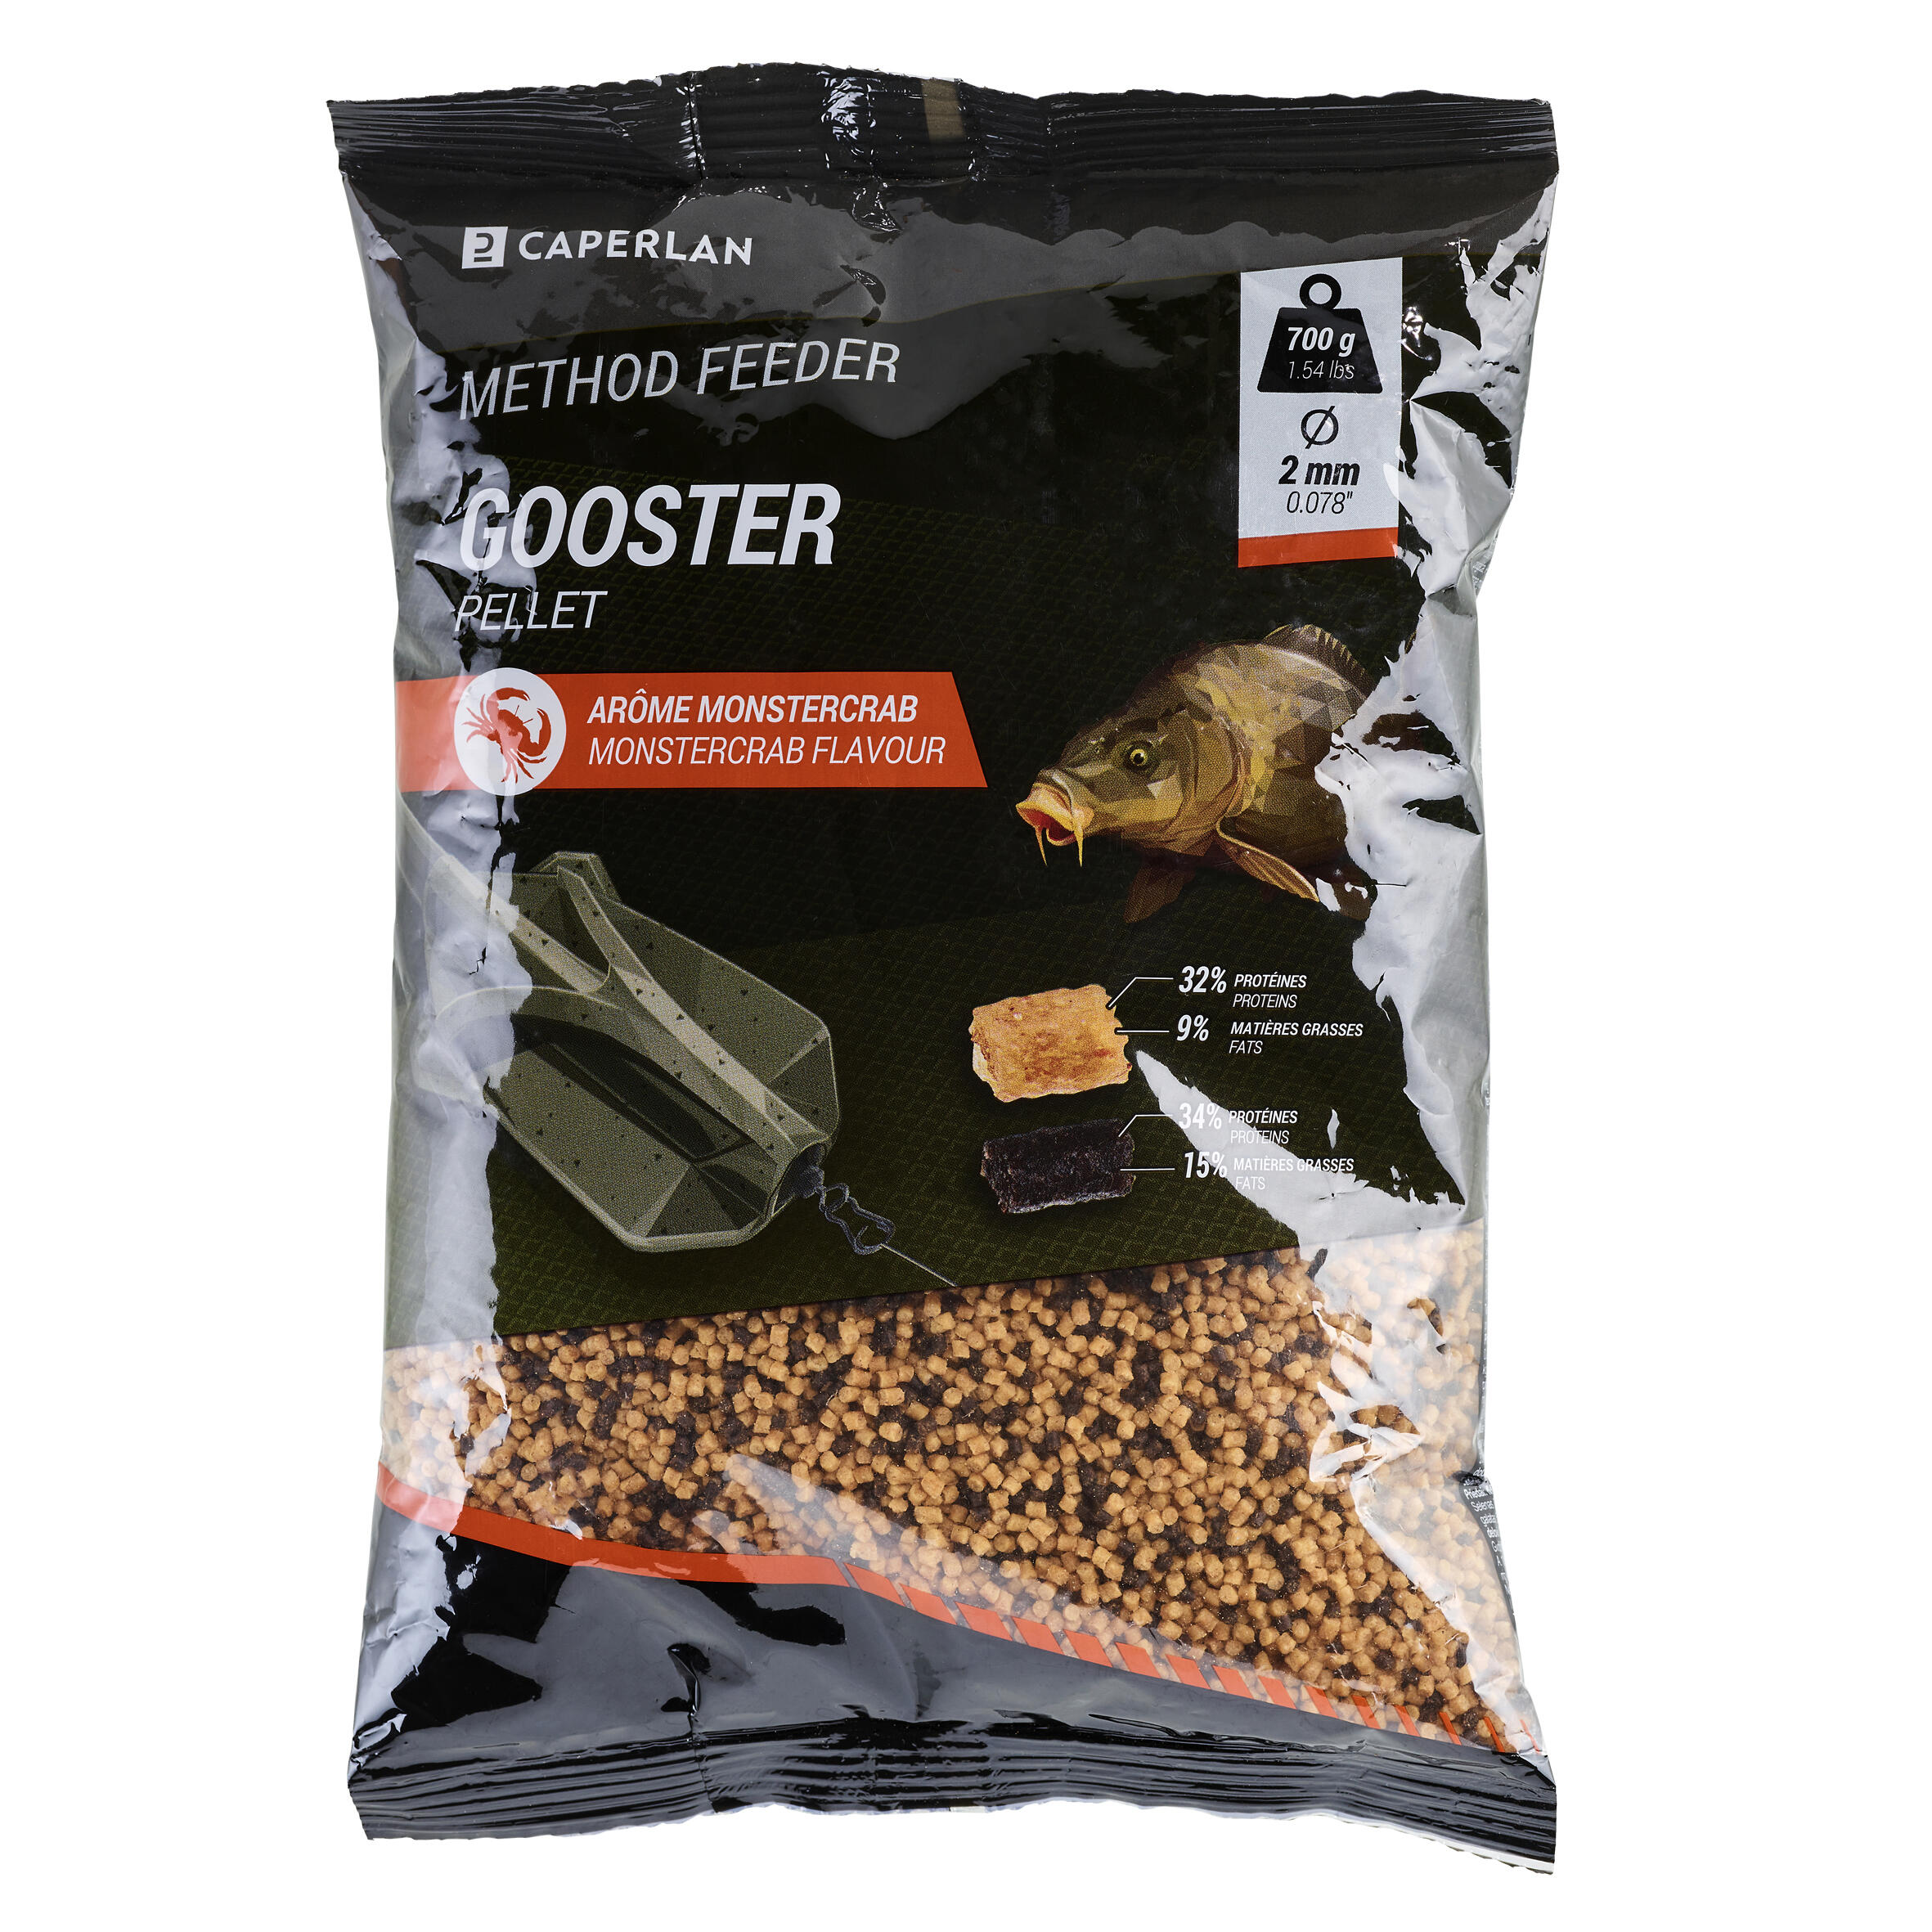 Method pellet feeder Gooster monstercrab 700g 3/5